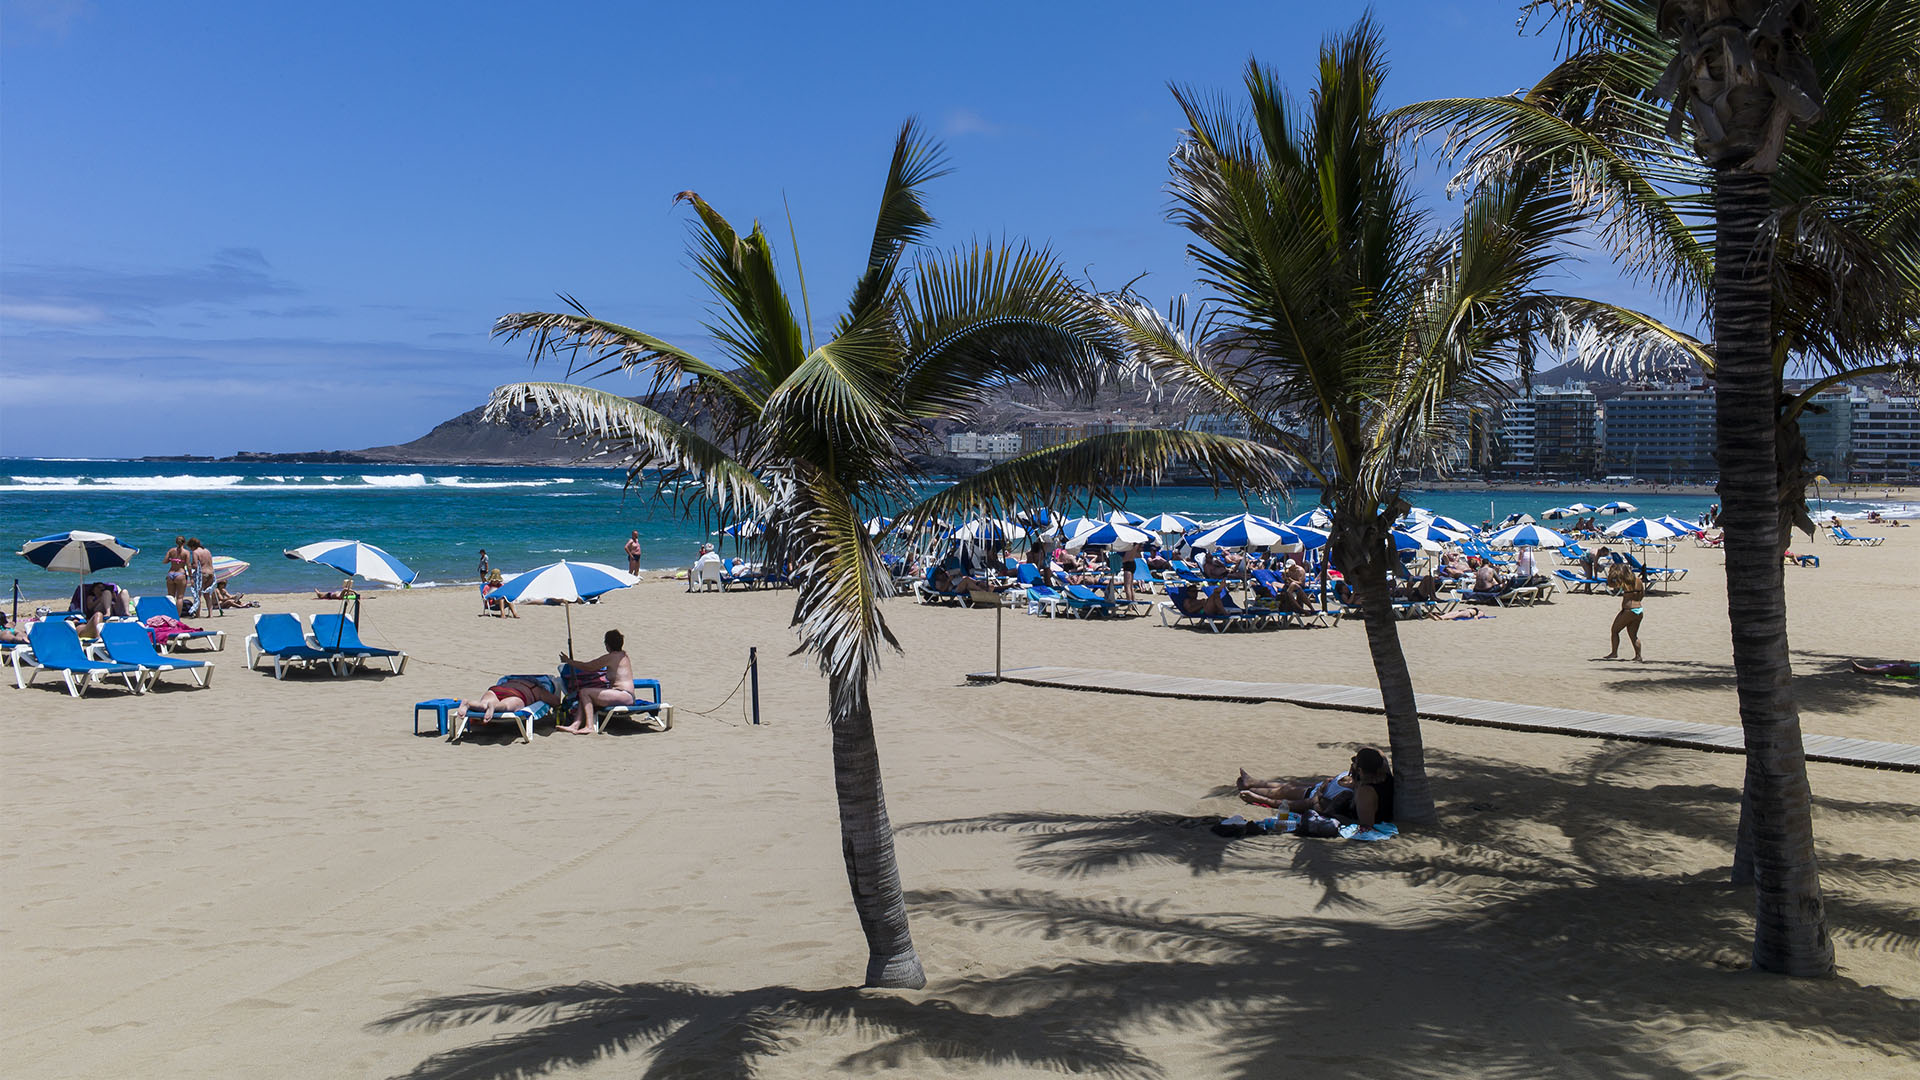 Sonnenschirme und Liegen für Touristen. Einheimische liegen lieber im Sand.